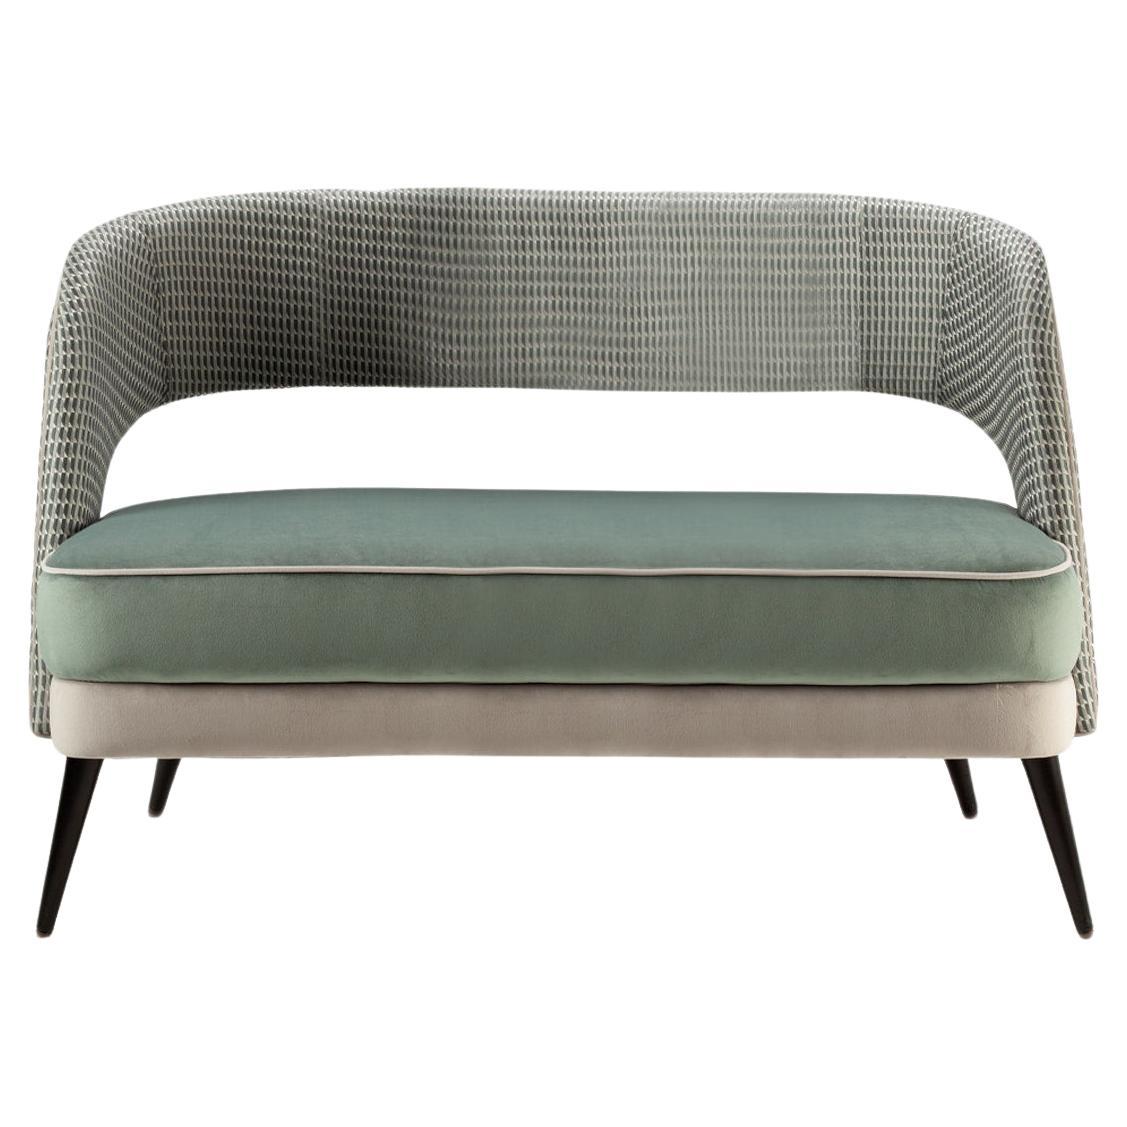 Das bequeme und elegante Sofa Ava ist ein vielseitiges Möbelstück, bei dem der Kreativität keine Grenzen gesetzt sind: Stoffe, Massivhölzer, Lacke und Messingbeschläge werden ausgewählt und auf vielfältige Weise kombiniert, um die perfekte